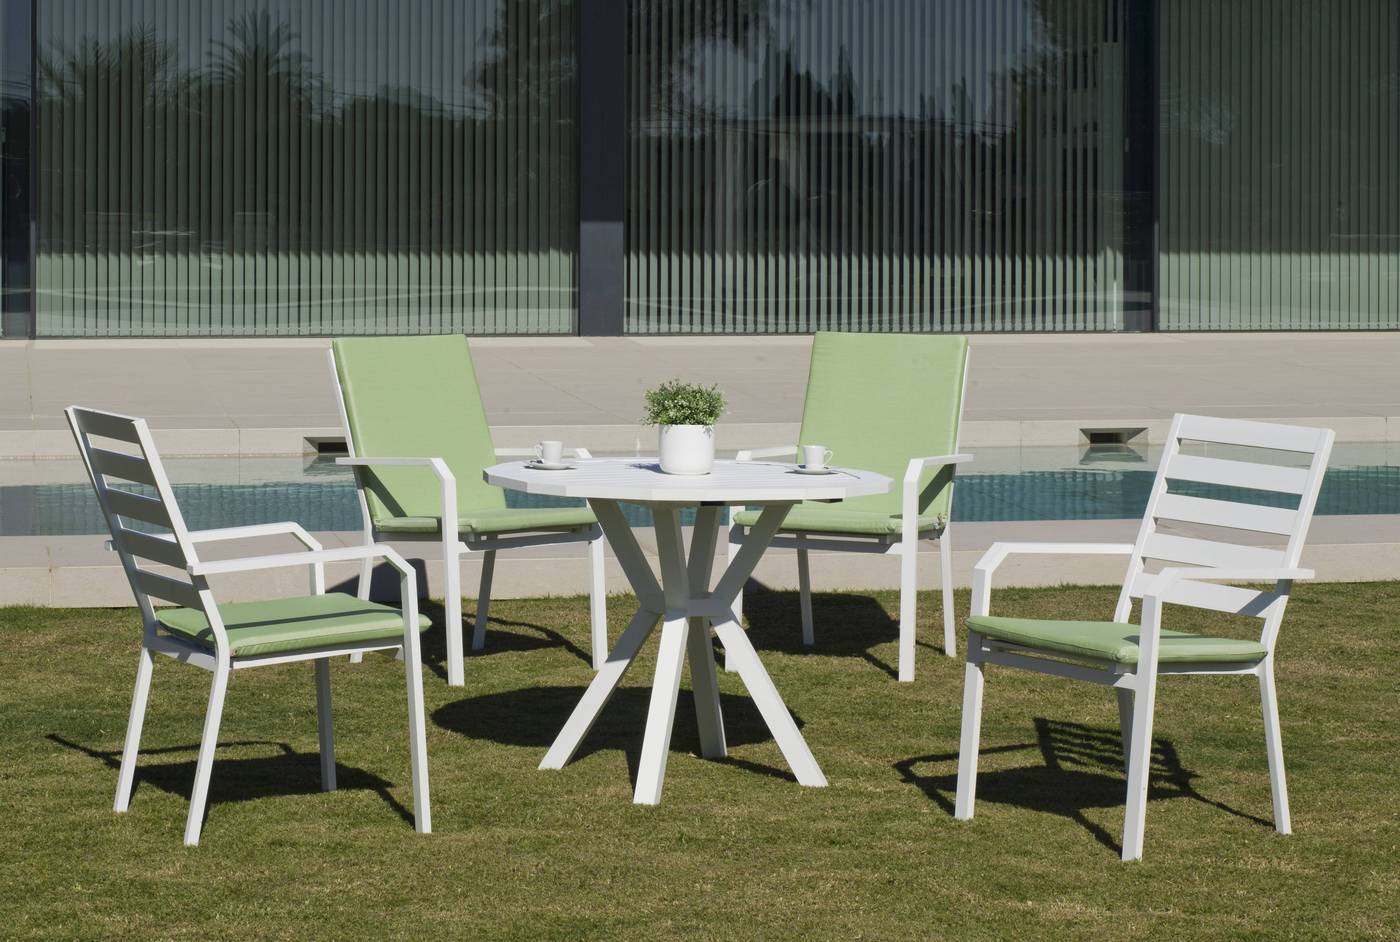 Set Aluminio Baracoa-Caravel 110-4 - Moderno conjunto de aluminio luxe: Mesa de comedor poligonal de 110 cm. + 4 sillones. Disponible en color blanco, antracita, champagne, plata o marrón.